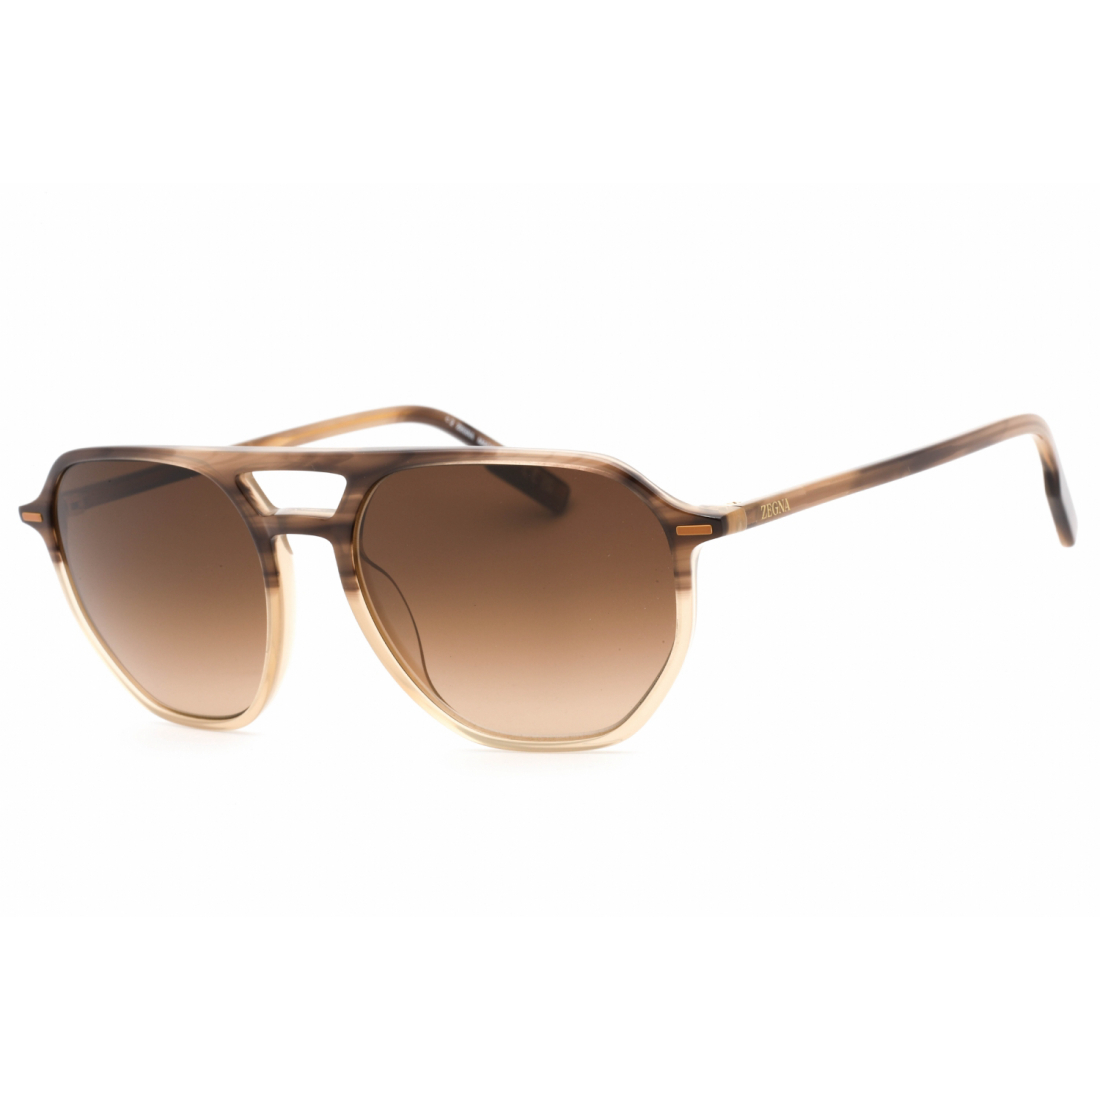 Men's 'EZ0212' Sunglasses